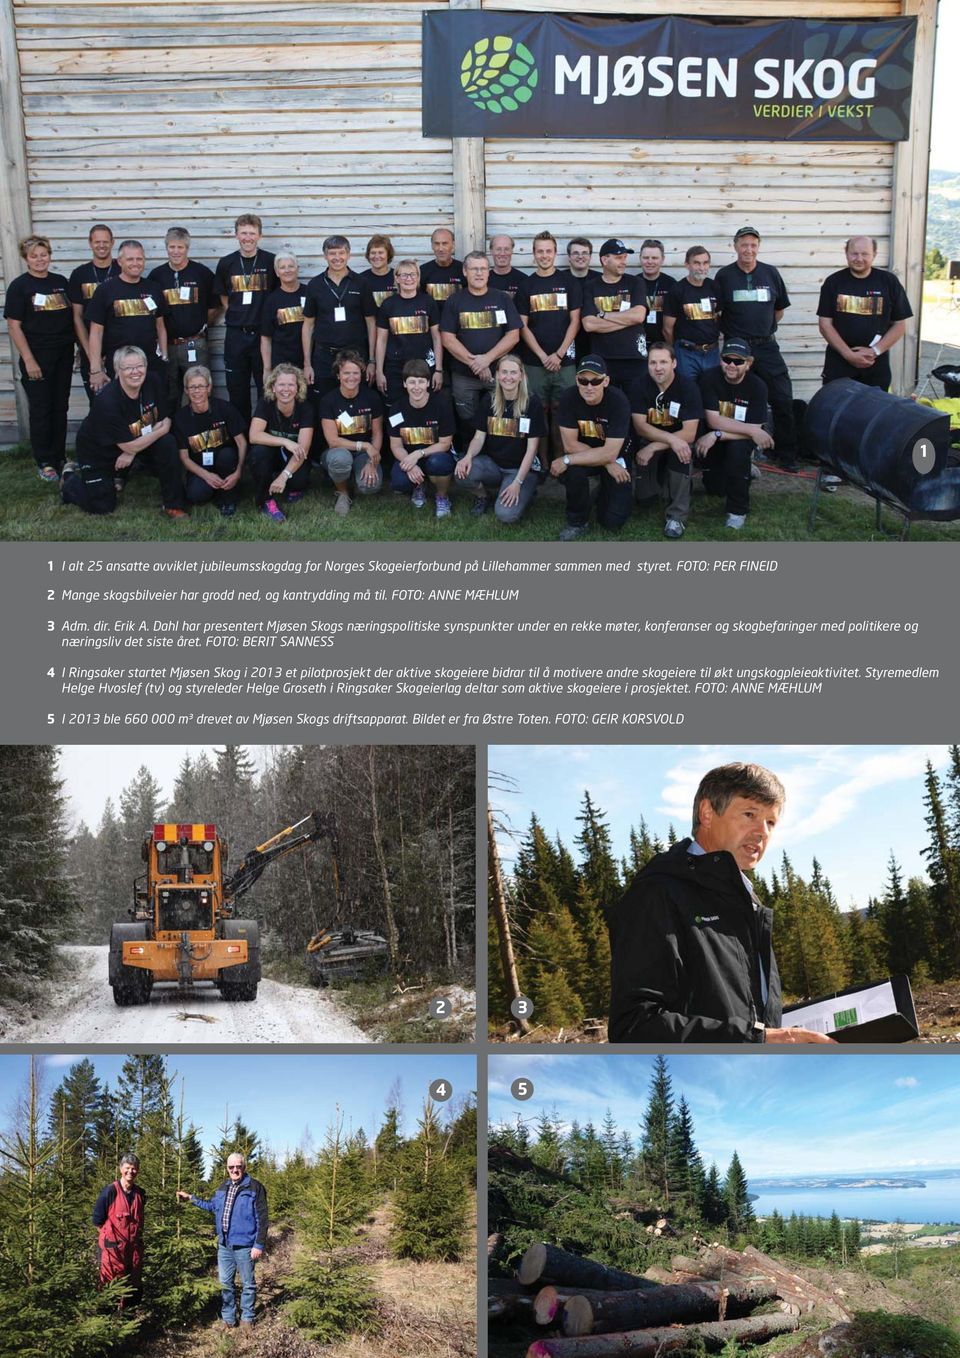 FOTO: BERIT SANNESS 4 I Ringsaker startet Mjøsen Skog i 2013 et pilotprosjekt der aktive skogeiere bidrar til å motivere andre skogeiere til økt ungskogpleieaktivitet.